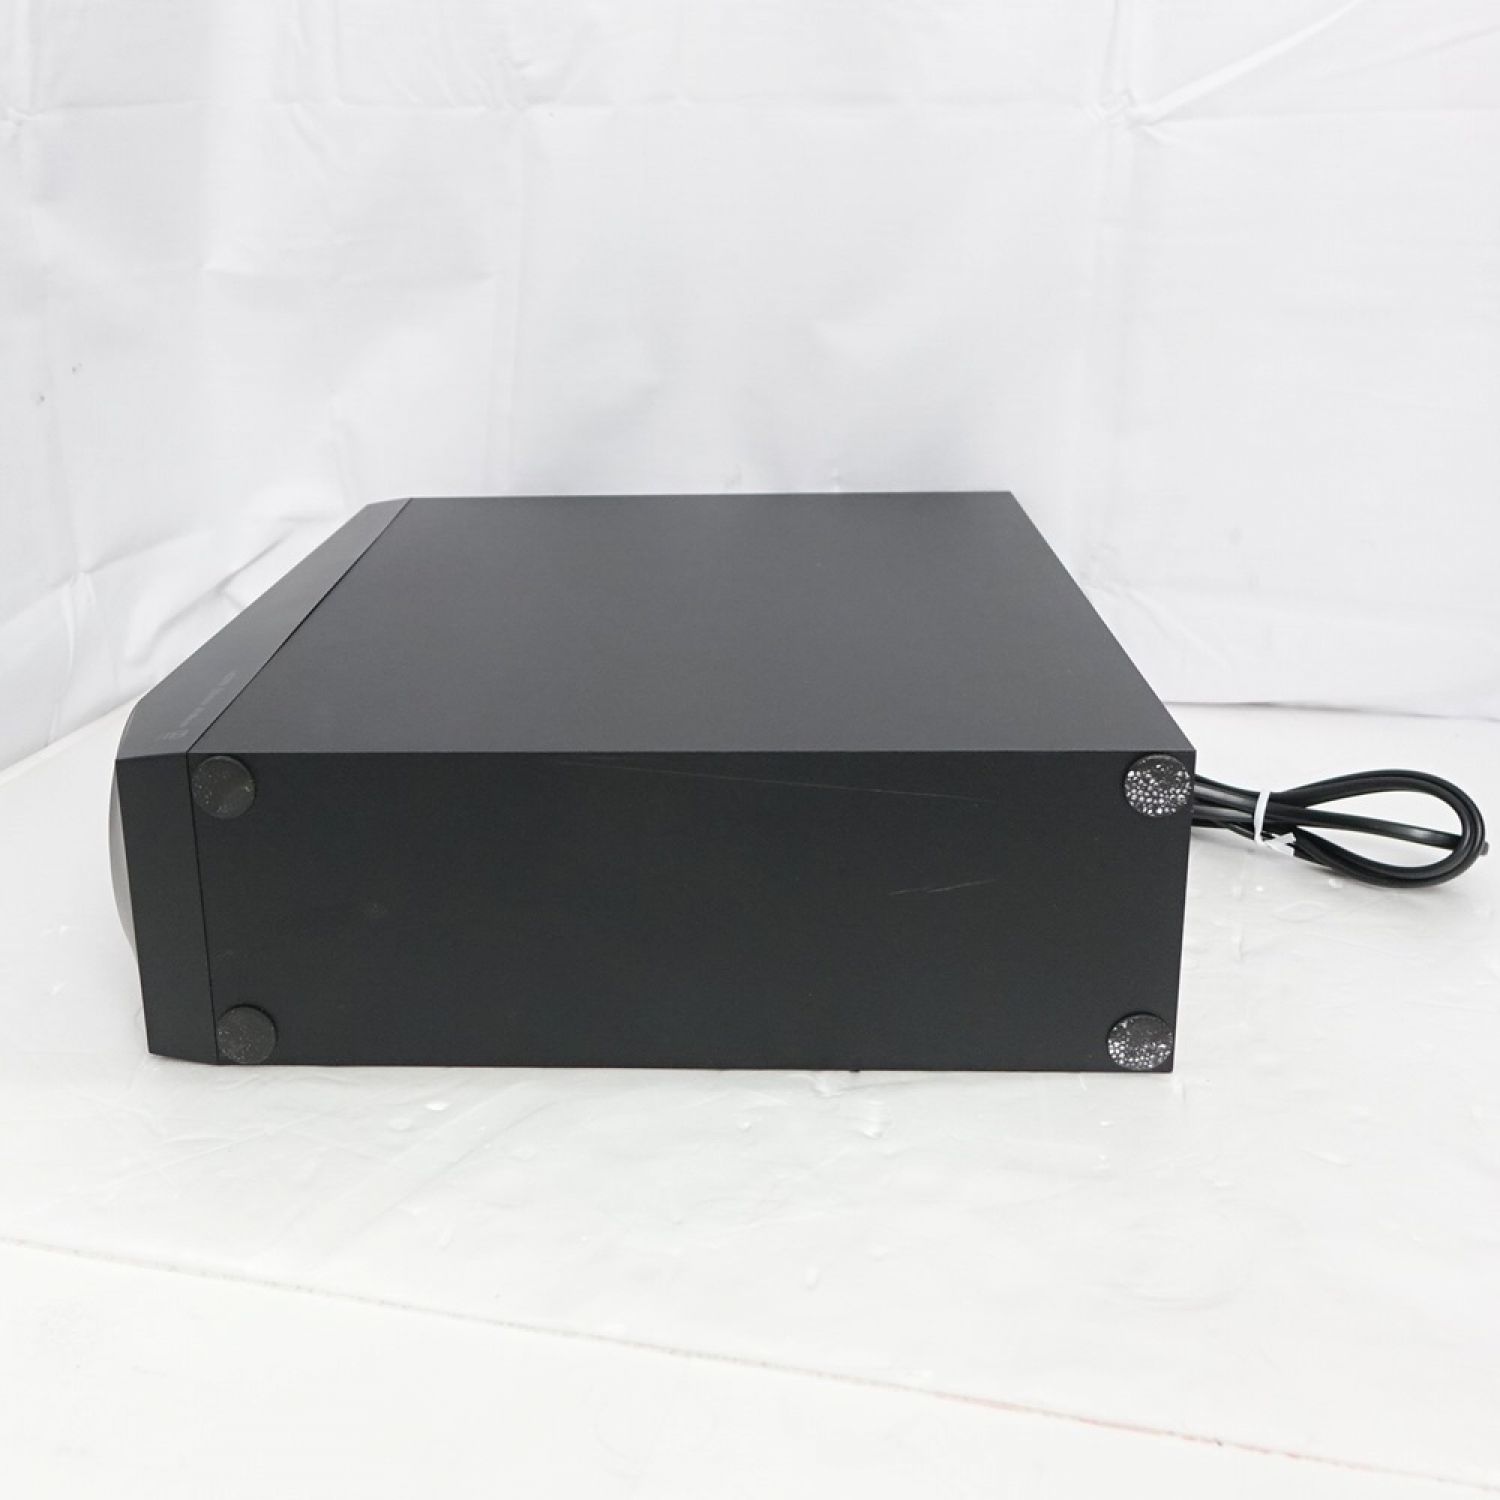 パイオニア HTP-CS1 コンパクトサテライトスピーカーシステム